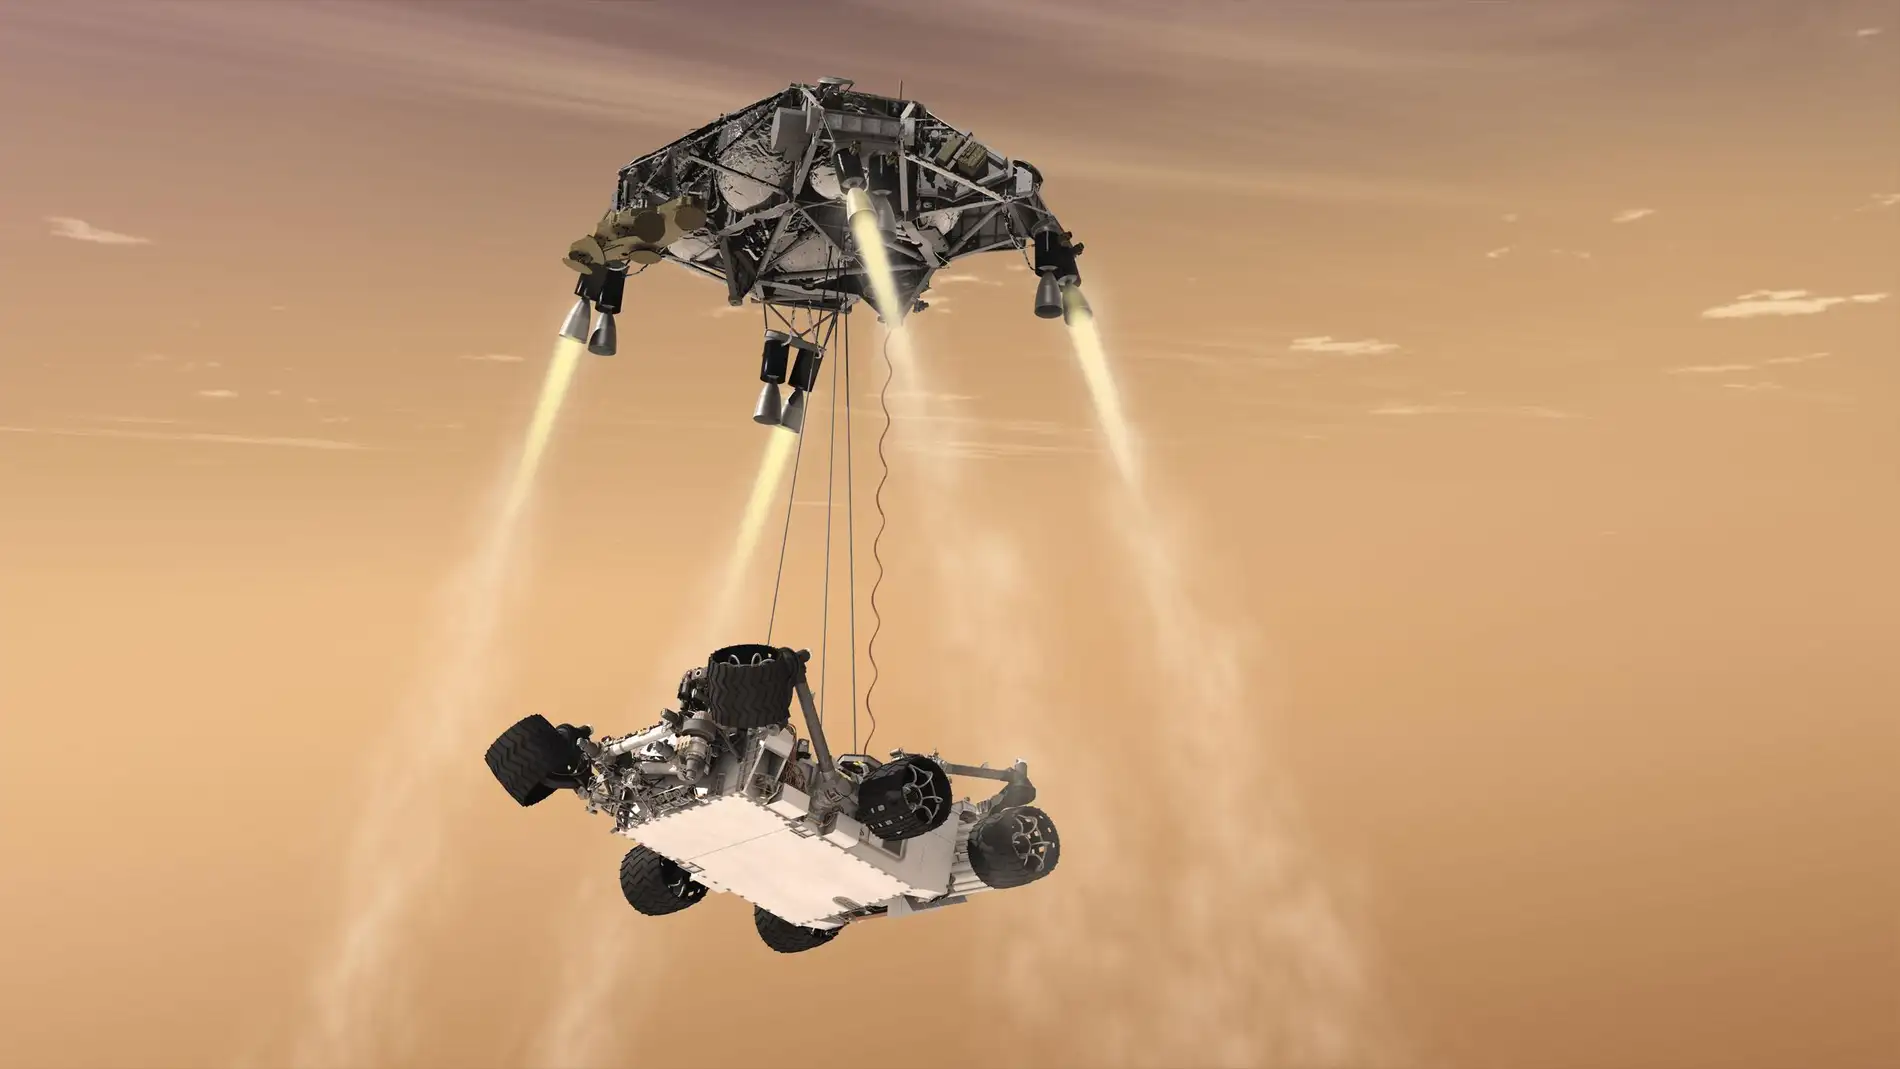 El Curiosity siendo descolgado por el skycrane suspendido en el cielo gracias a los retrocohetes